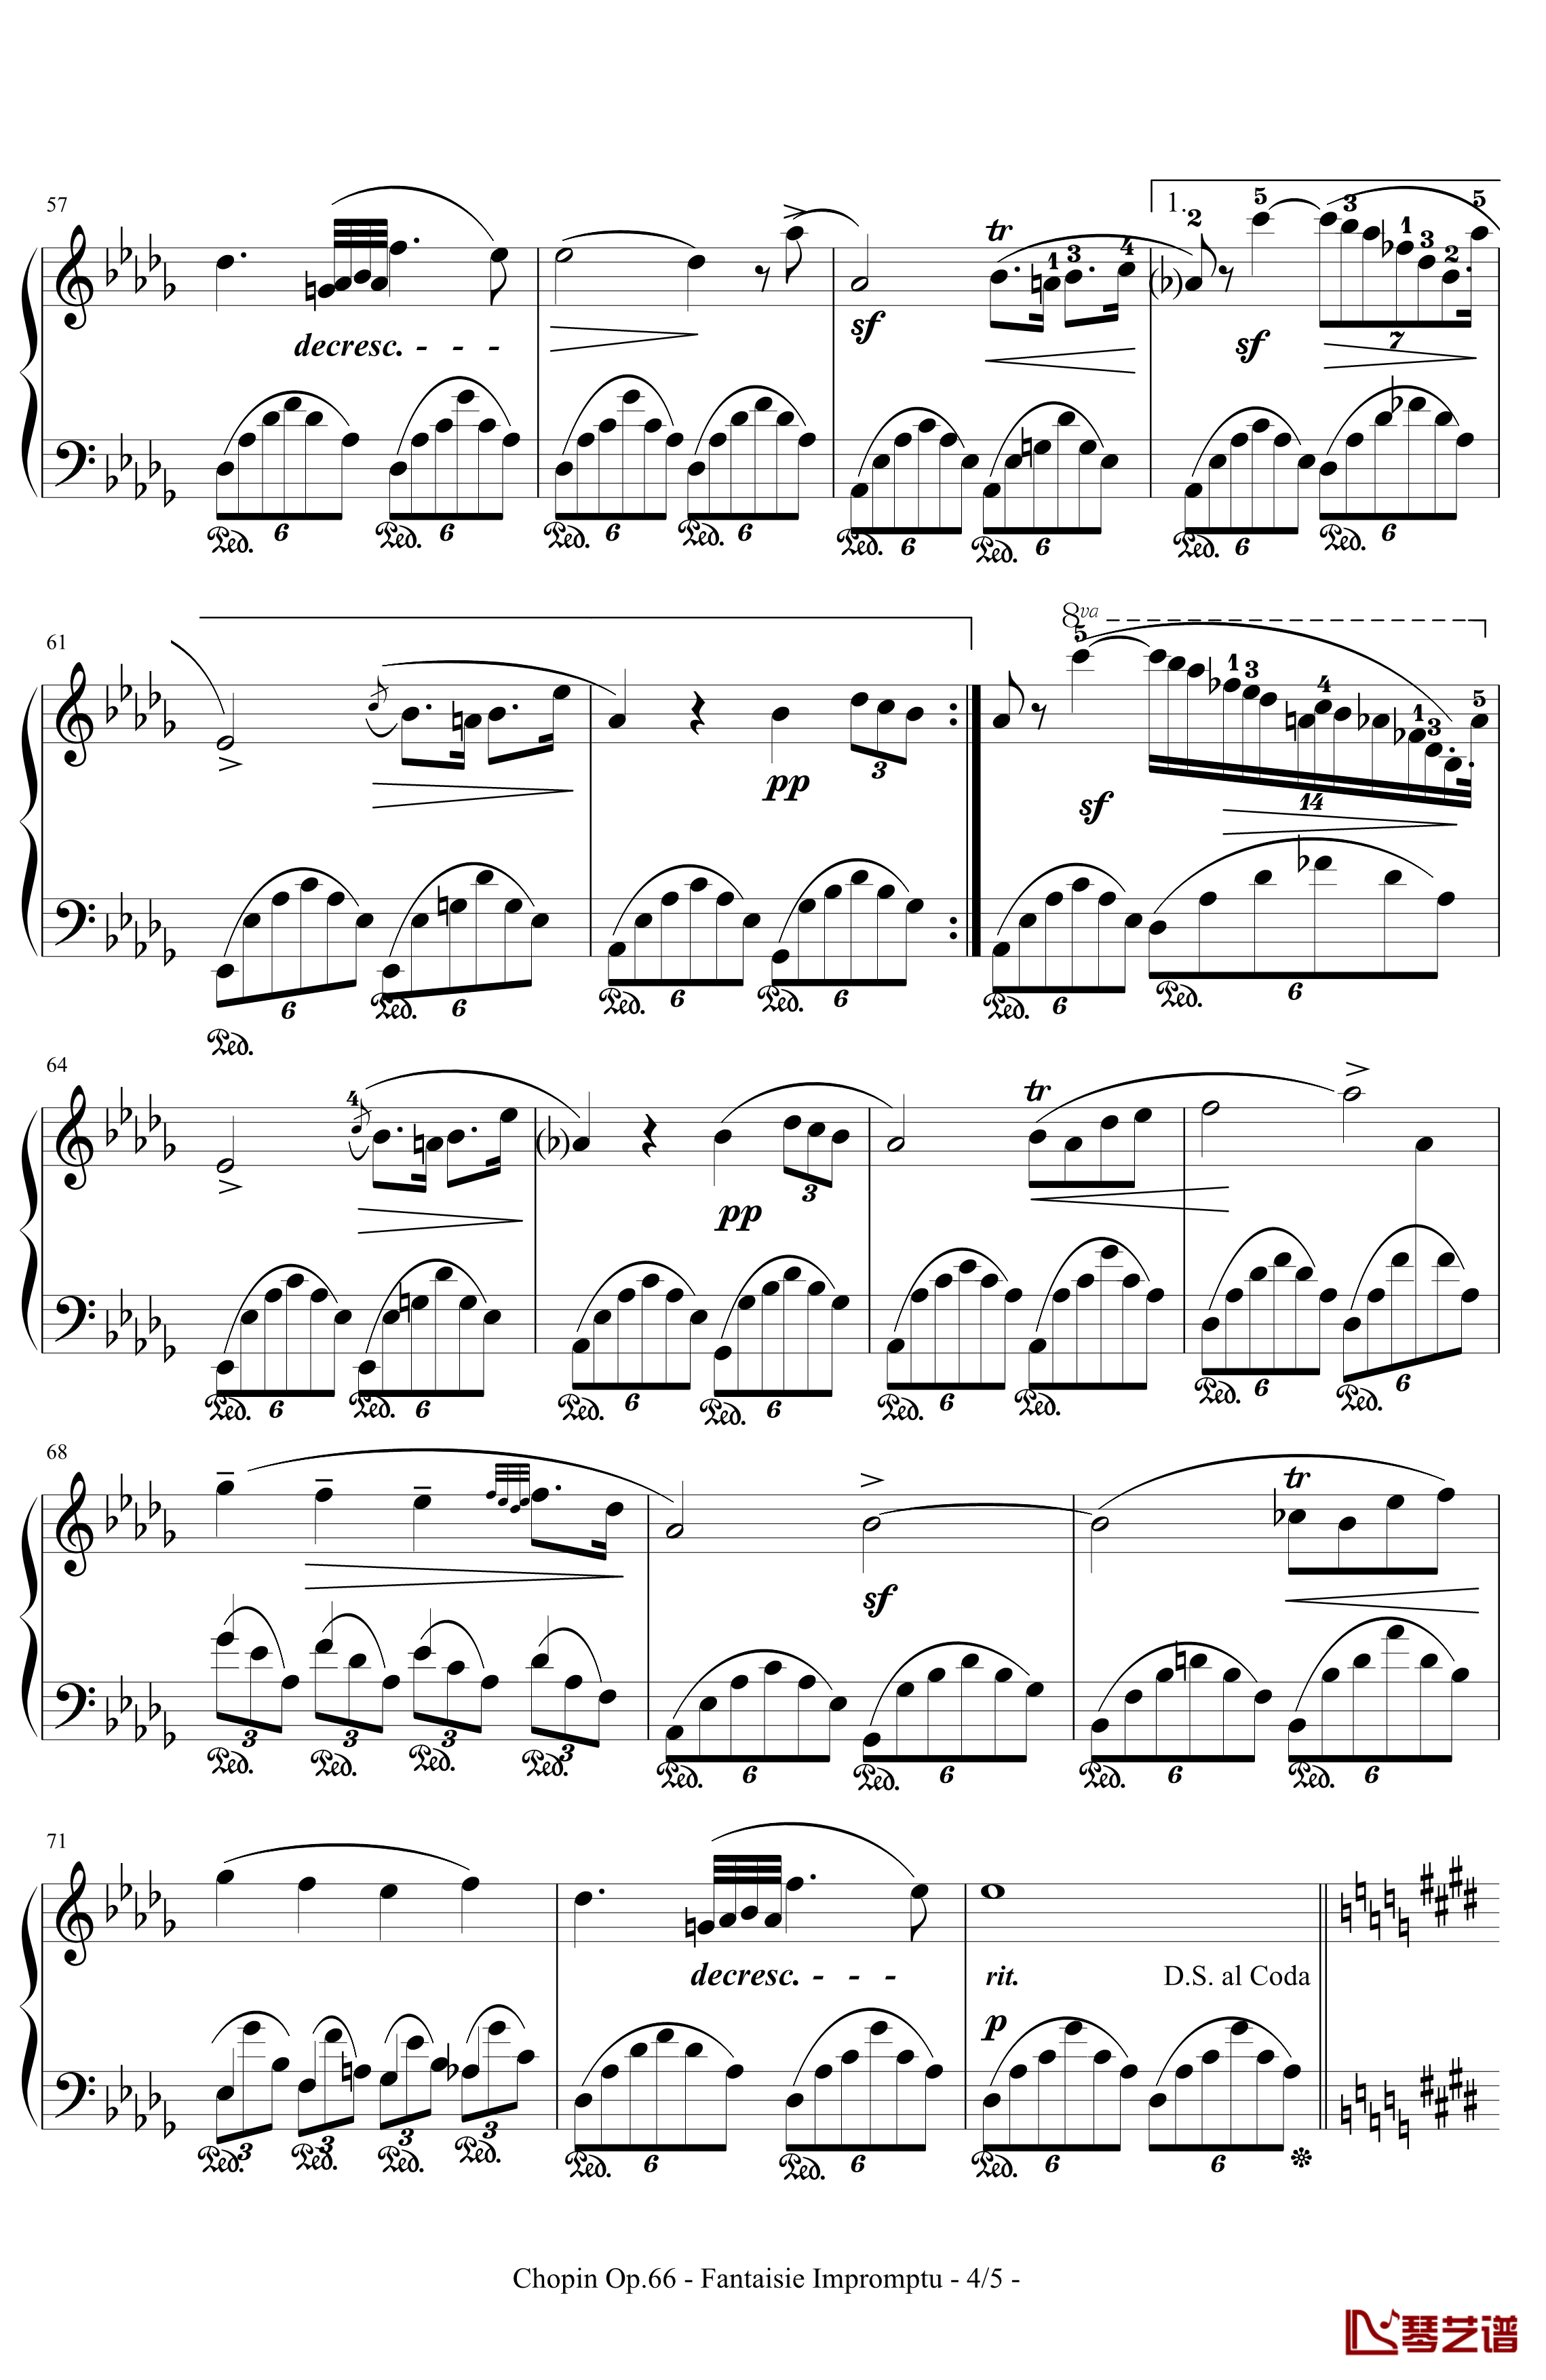 即兴幻想曲钢琴谱-带指法-Op.66-肖邦-chopin